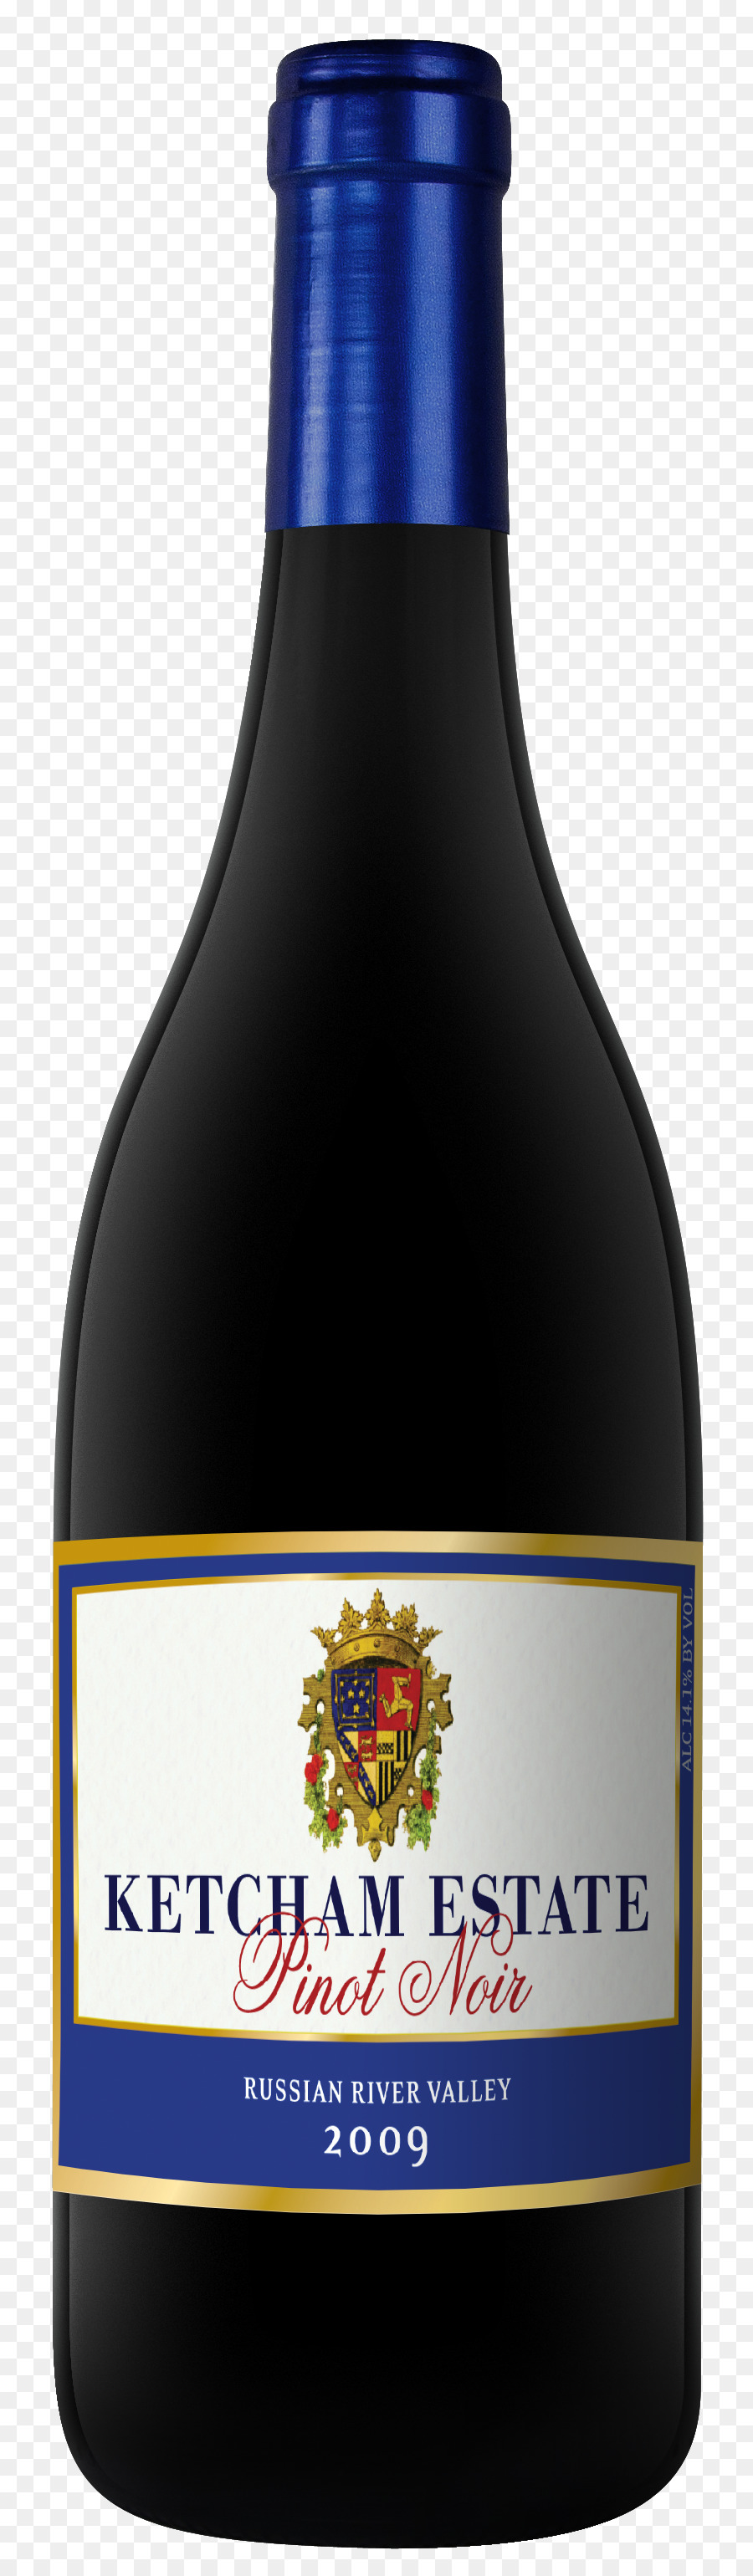 Likörwein Produkt Flasche Grand final - Rotwein pinot noir russian